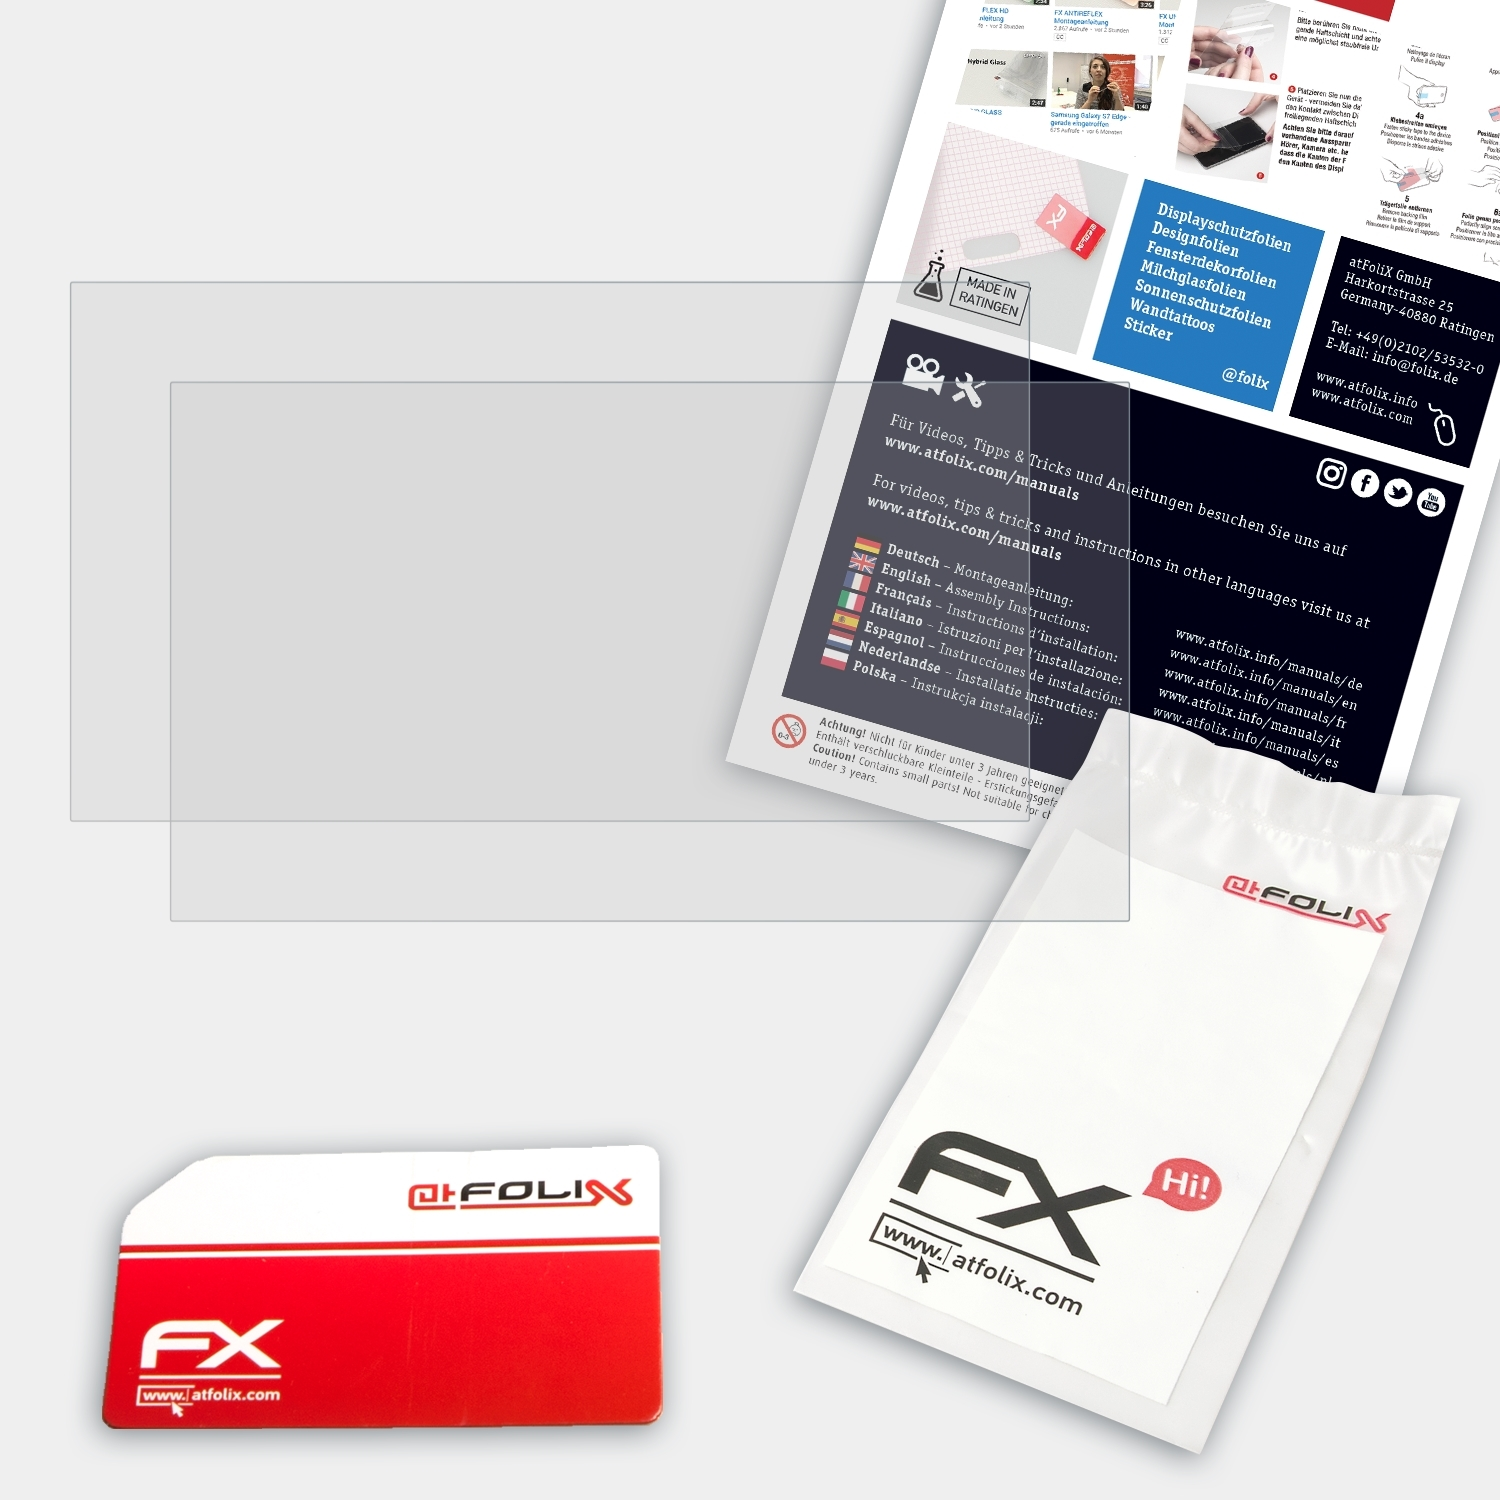 ATFOLIX 2x FX-Antireflex Panasonic Toughpad CF-MX4) Displayschutz(für